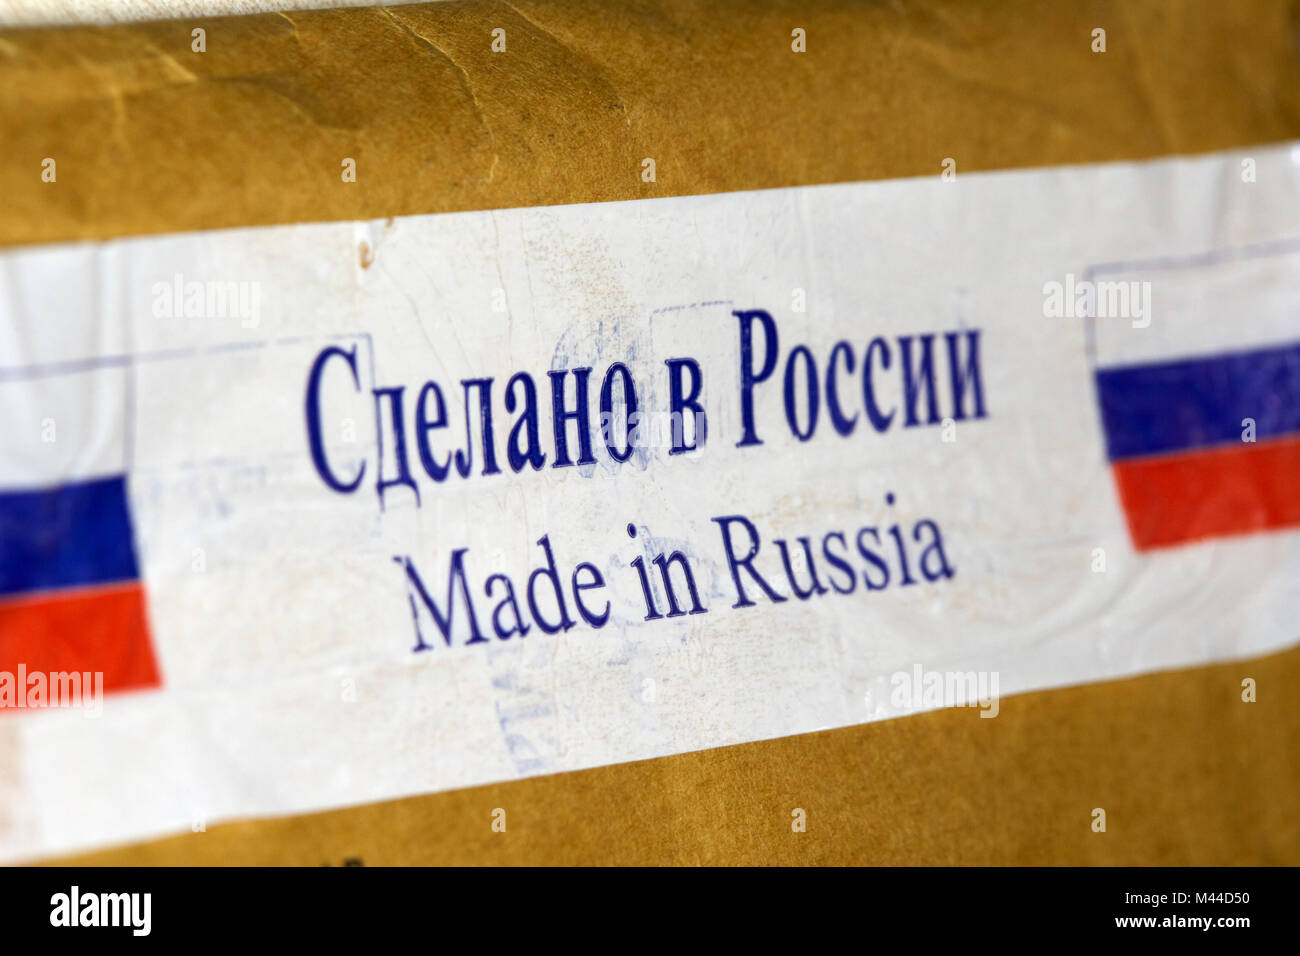 Fabricado en Rusia cinta en paquetes recibidos desde Rusia en cirílico y en inglés Foto de stock